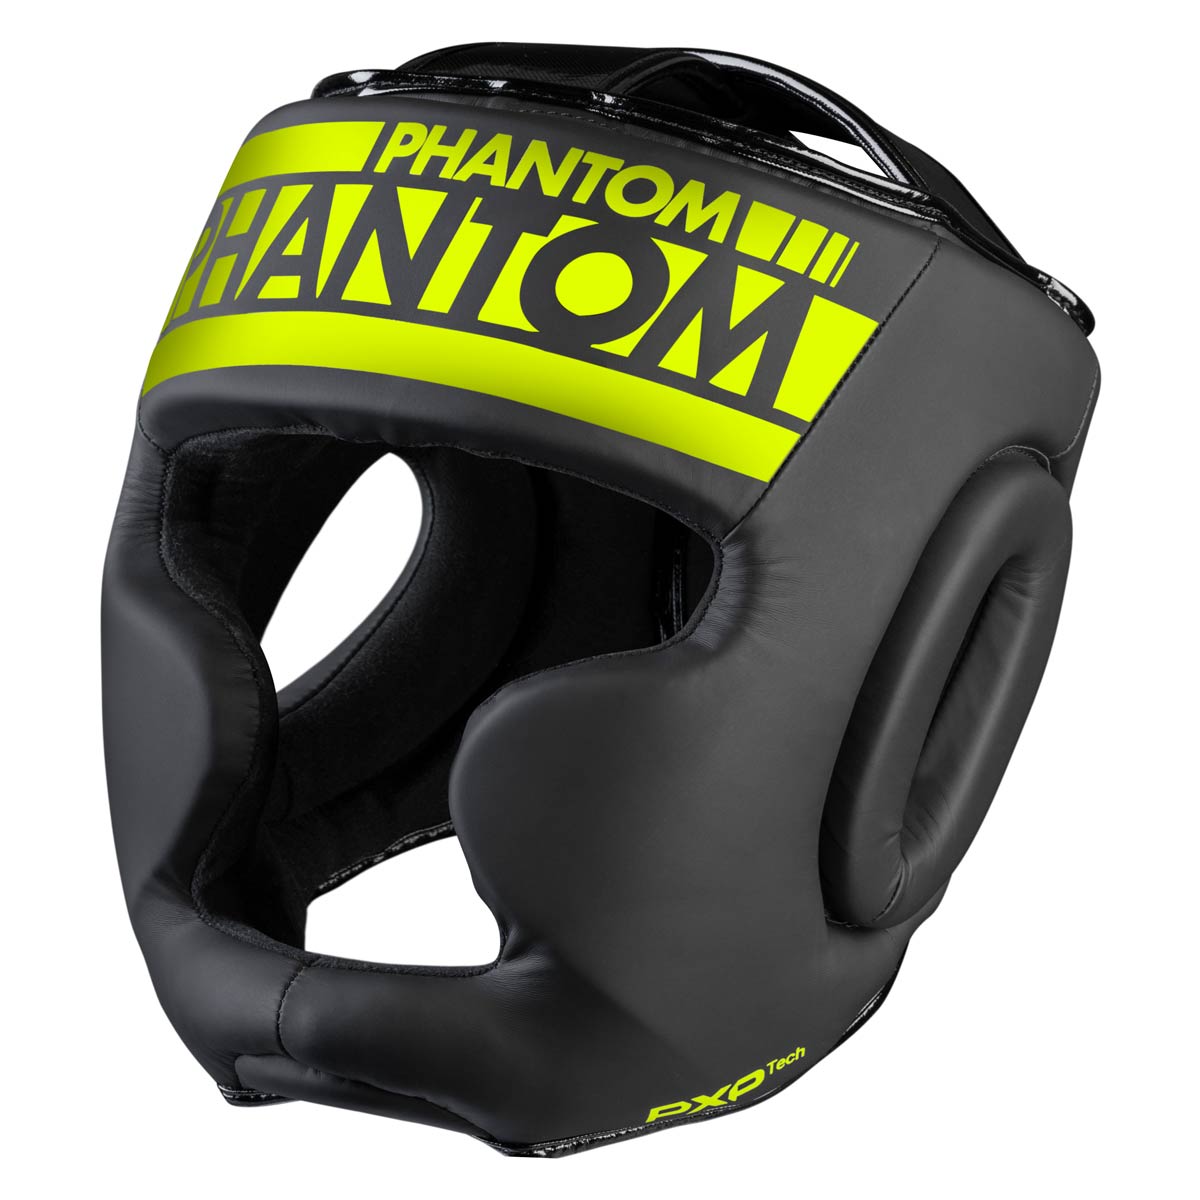 Der Phantom Apex FULL FACE Kopfschutz in Neon Schwarz